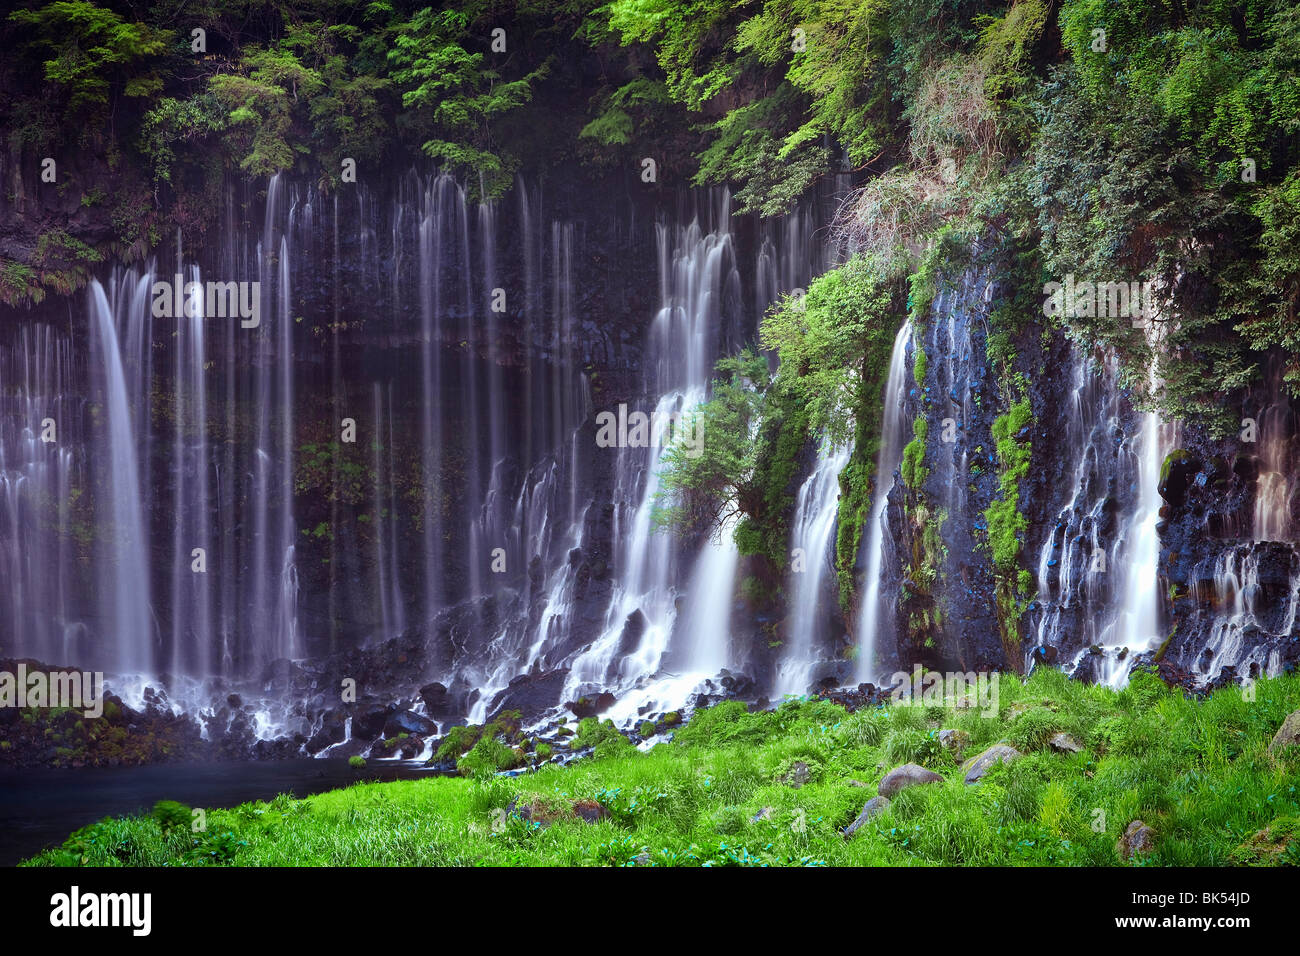 Shiraito Falls, Fujinomiya, Shizuoka Prefecture, Japan Stock Photo